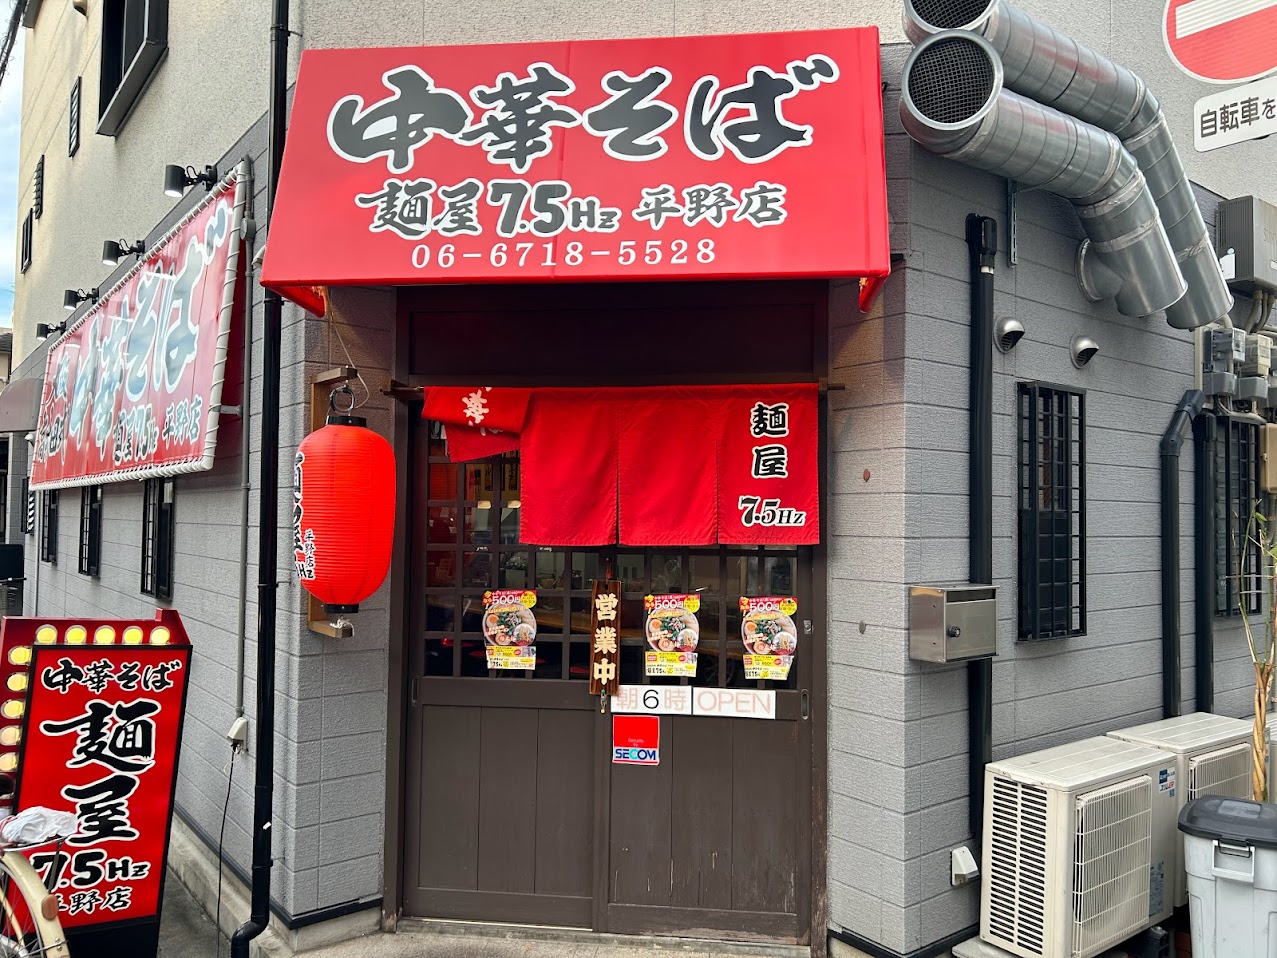 麺屋7.5㎐平野店外観7